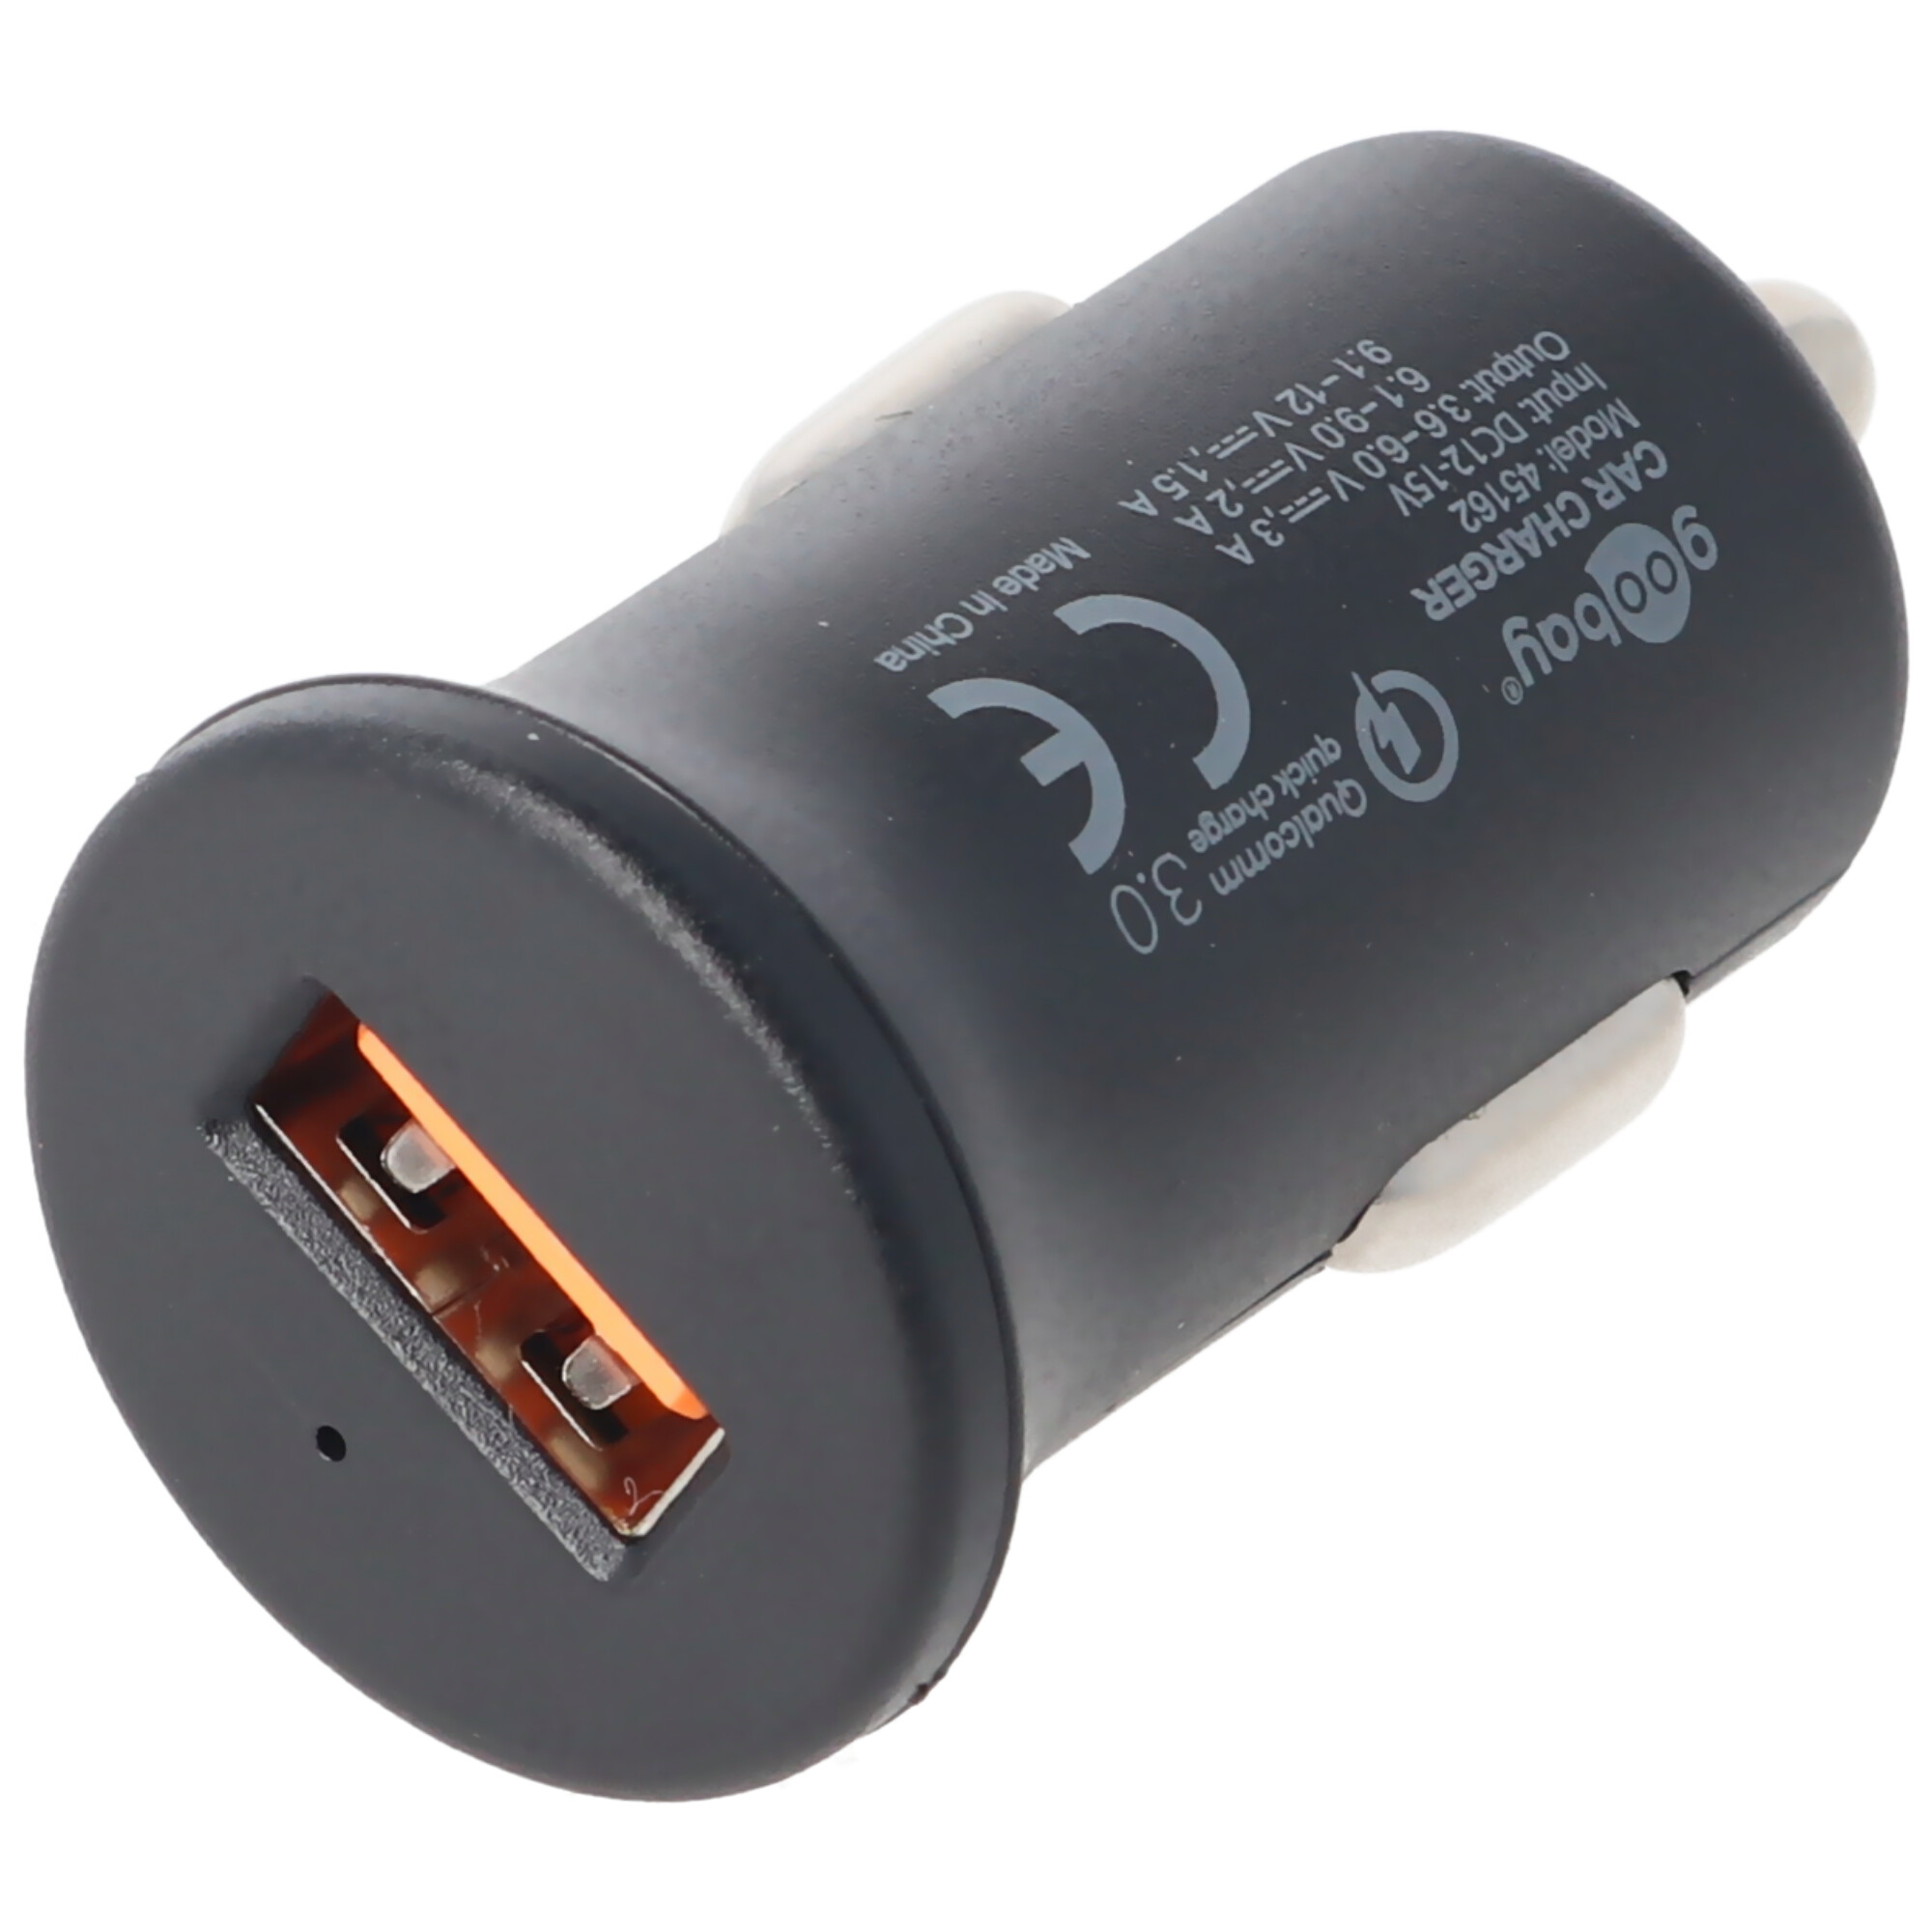 Goobay Kit de Charge USB-C Double 2.4A Noir - Chargeur téléphone